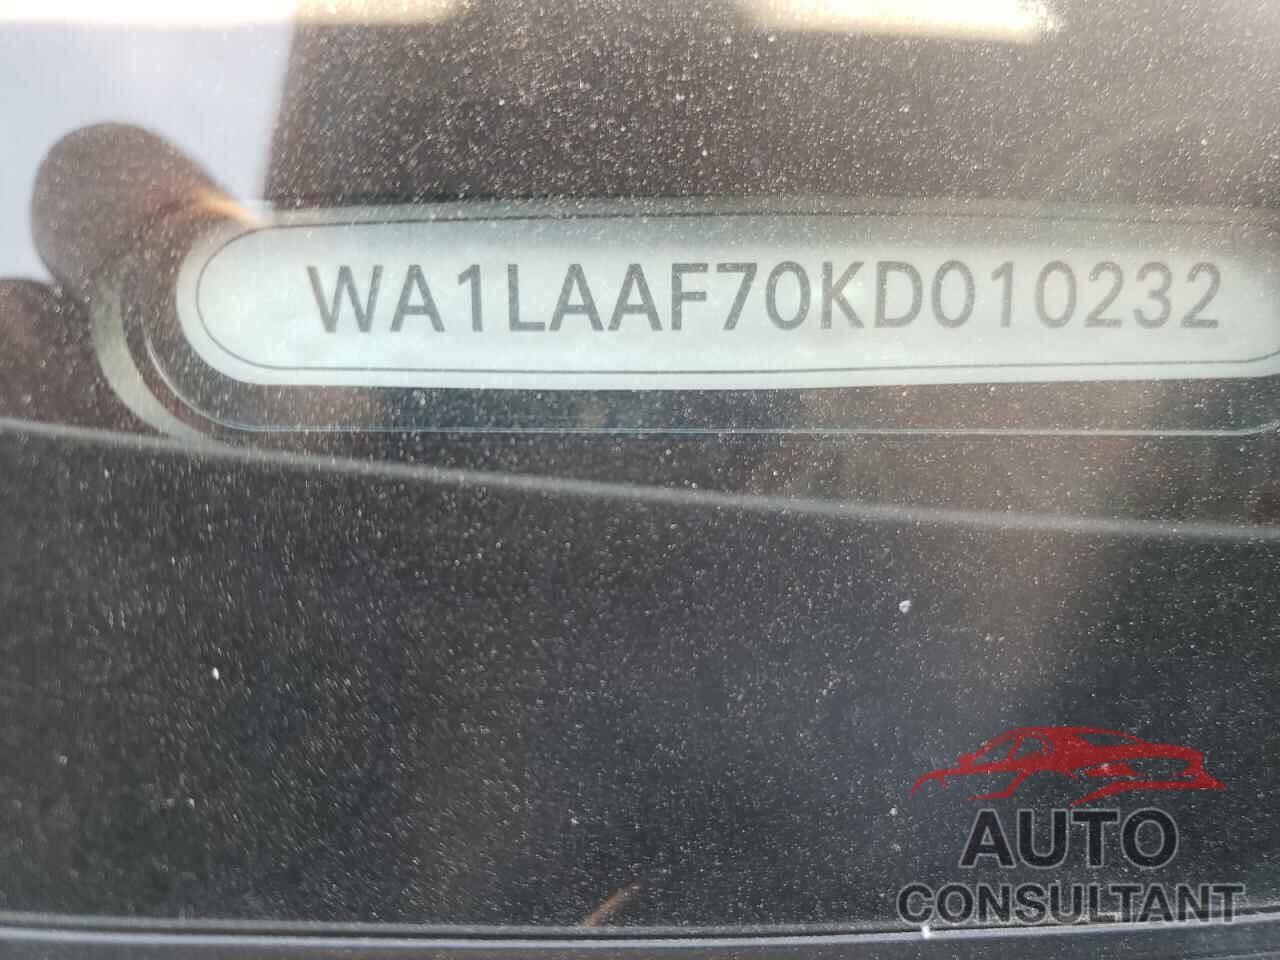 AUDI Q7 2019 - WA1LAAF70KD010232